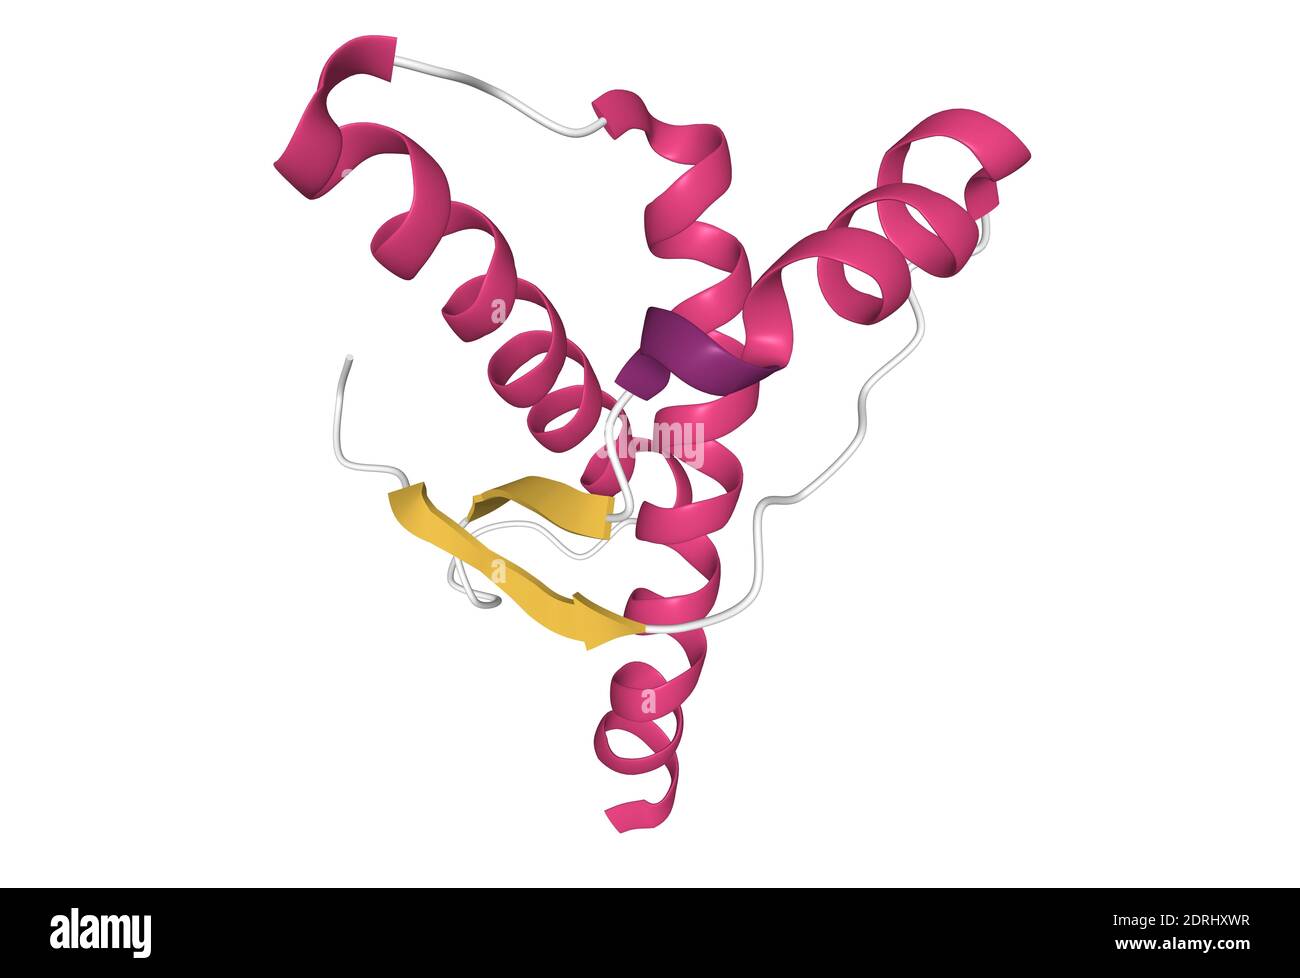 Struttura del prione umano, modello di cartone animato 3D isolato, sfondo bianco Foto Stock